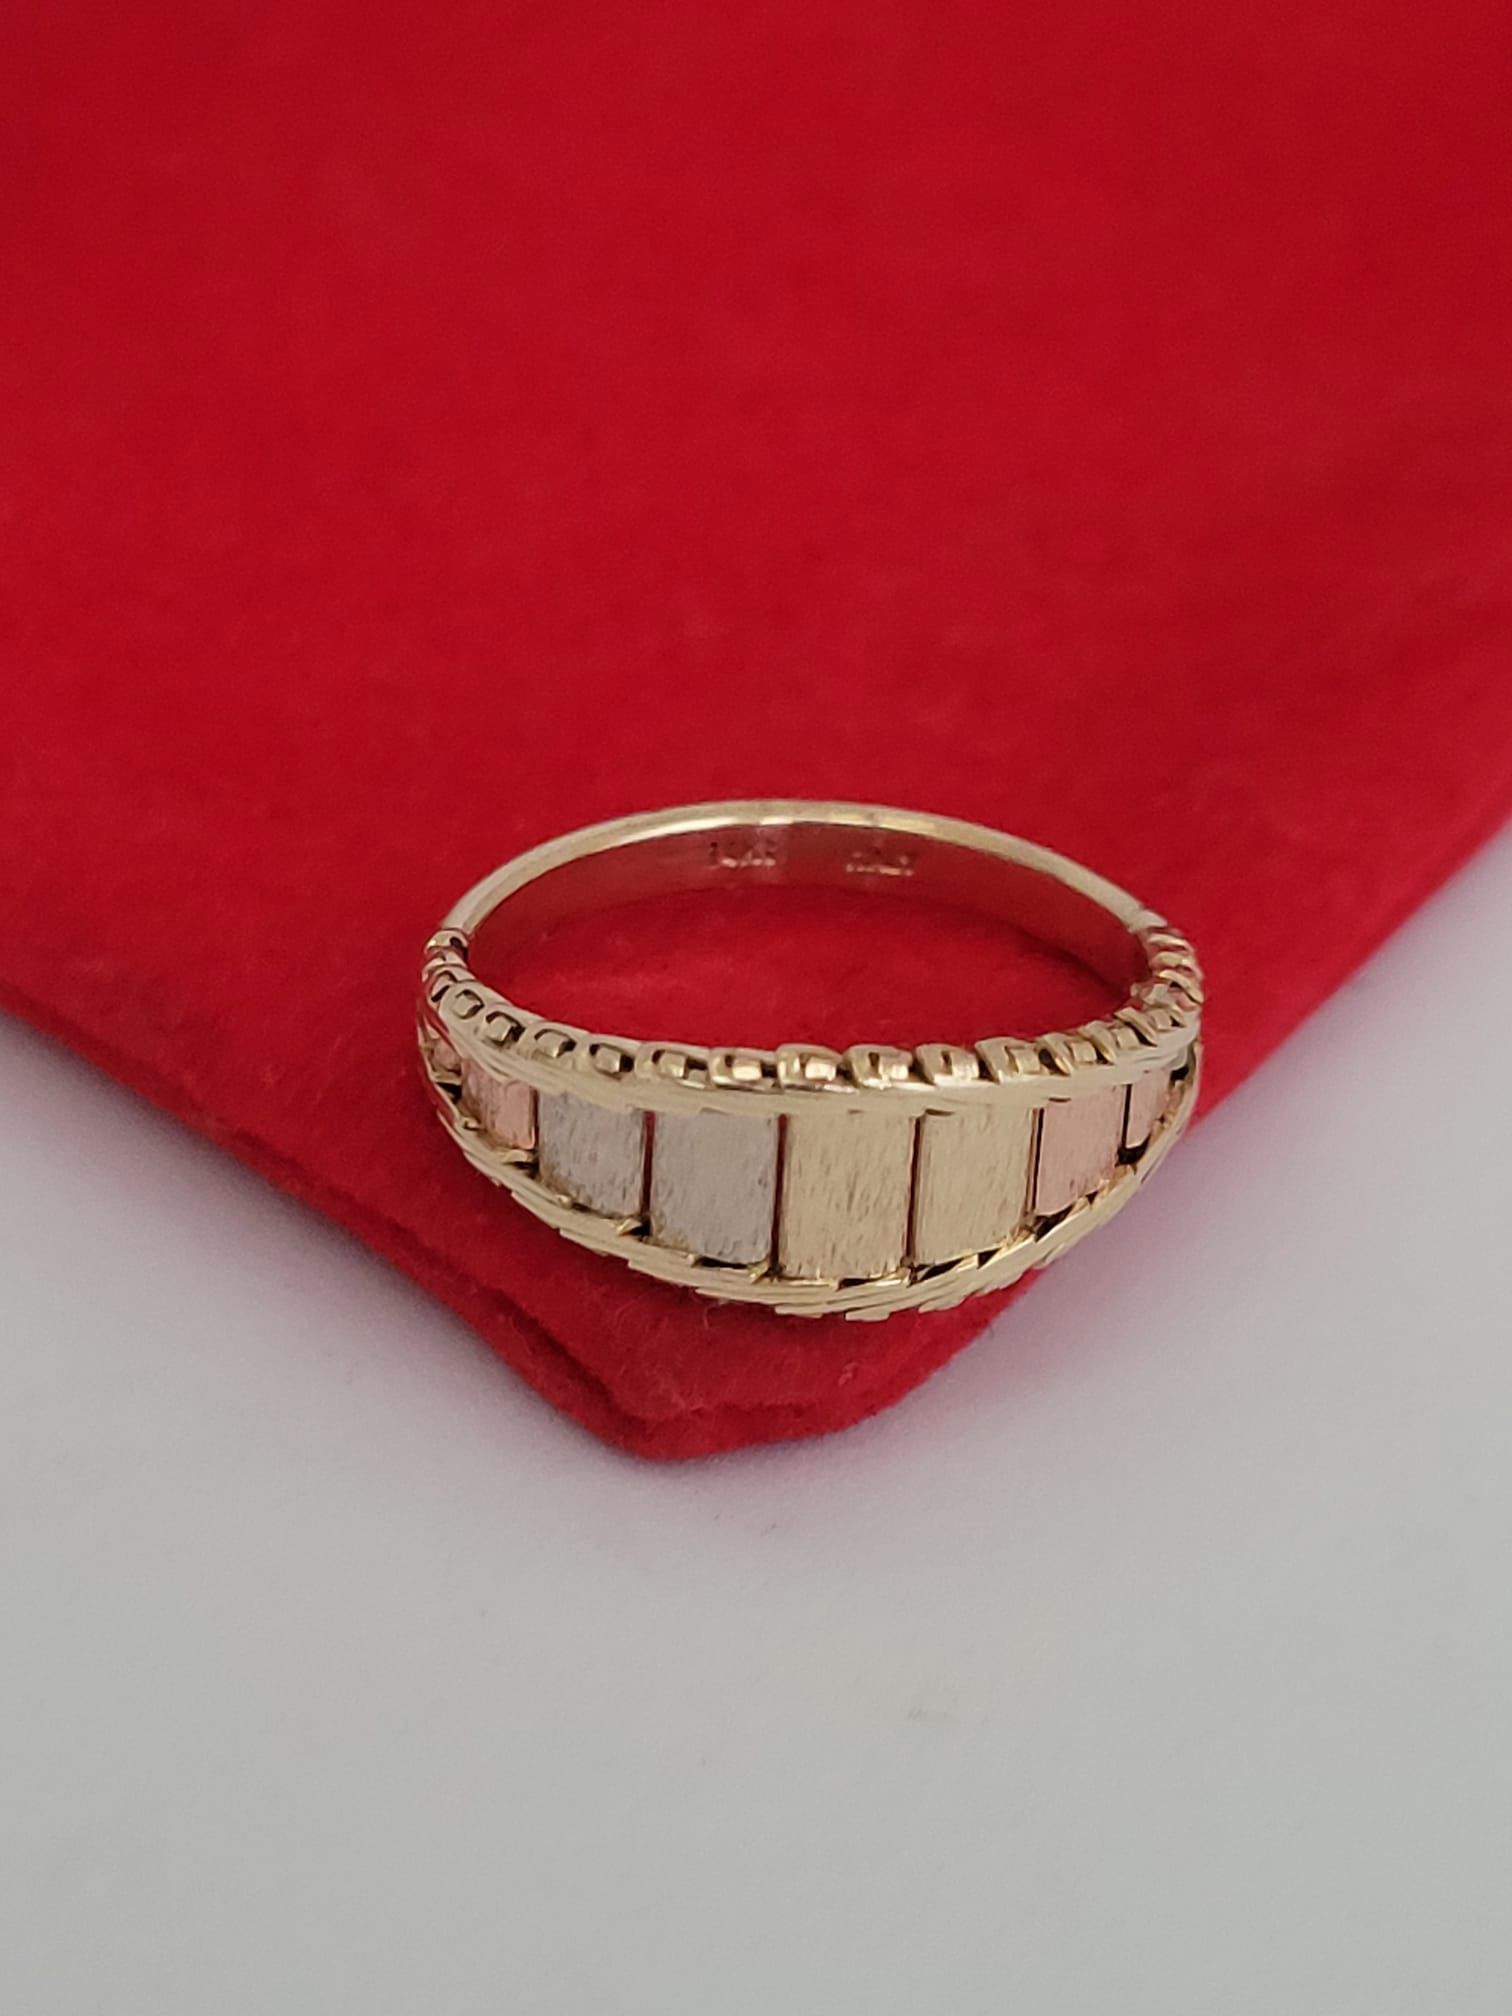 ❤️14k Size 6.25 Beautiful yellow gold etched Link Band ring!/Anillo de oro con eslabones de oro!👌😍🌸Post tags: Anillo De Oro